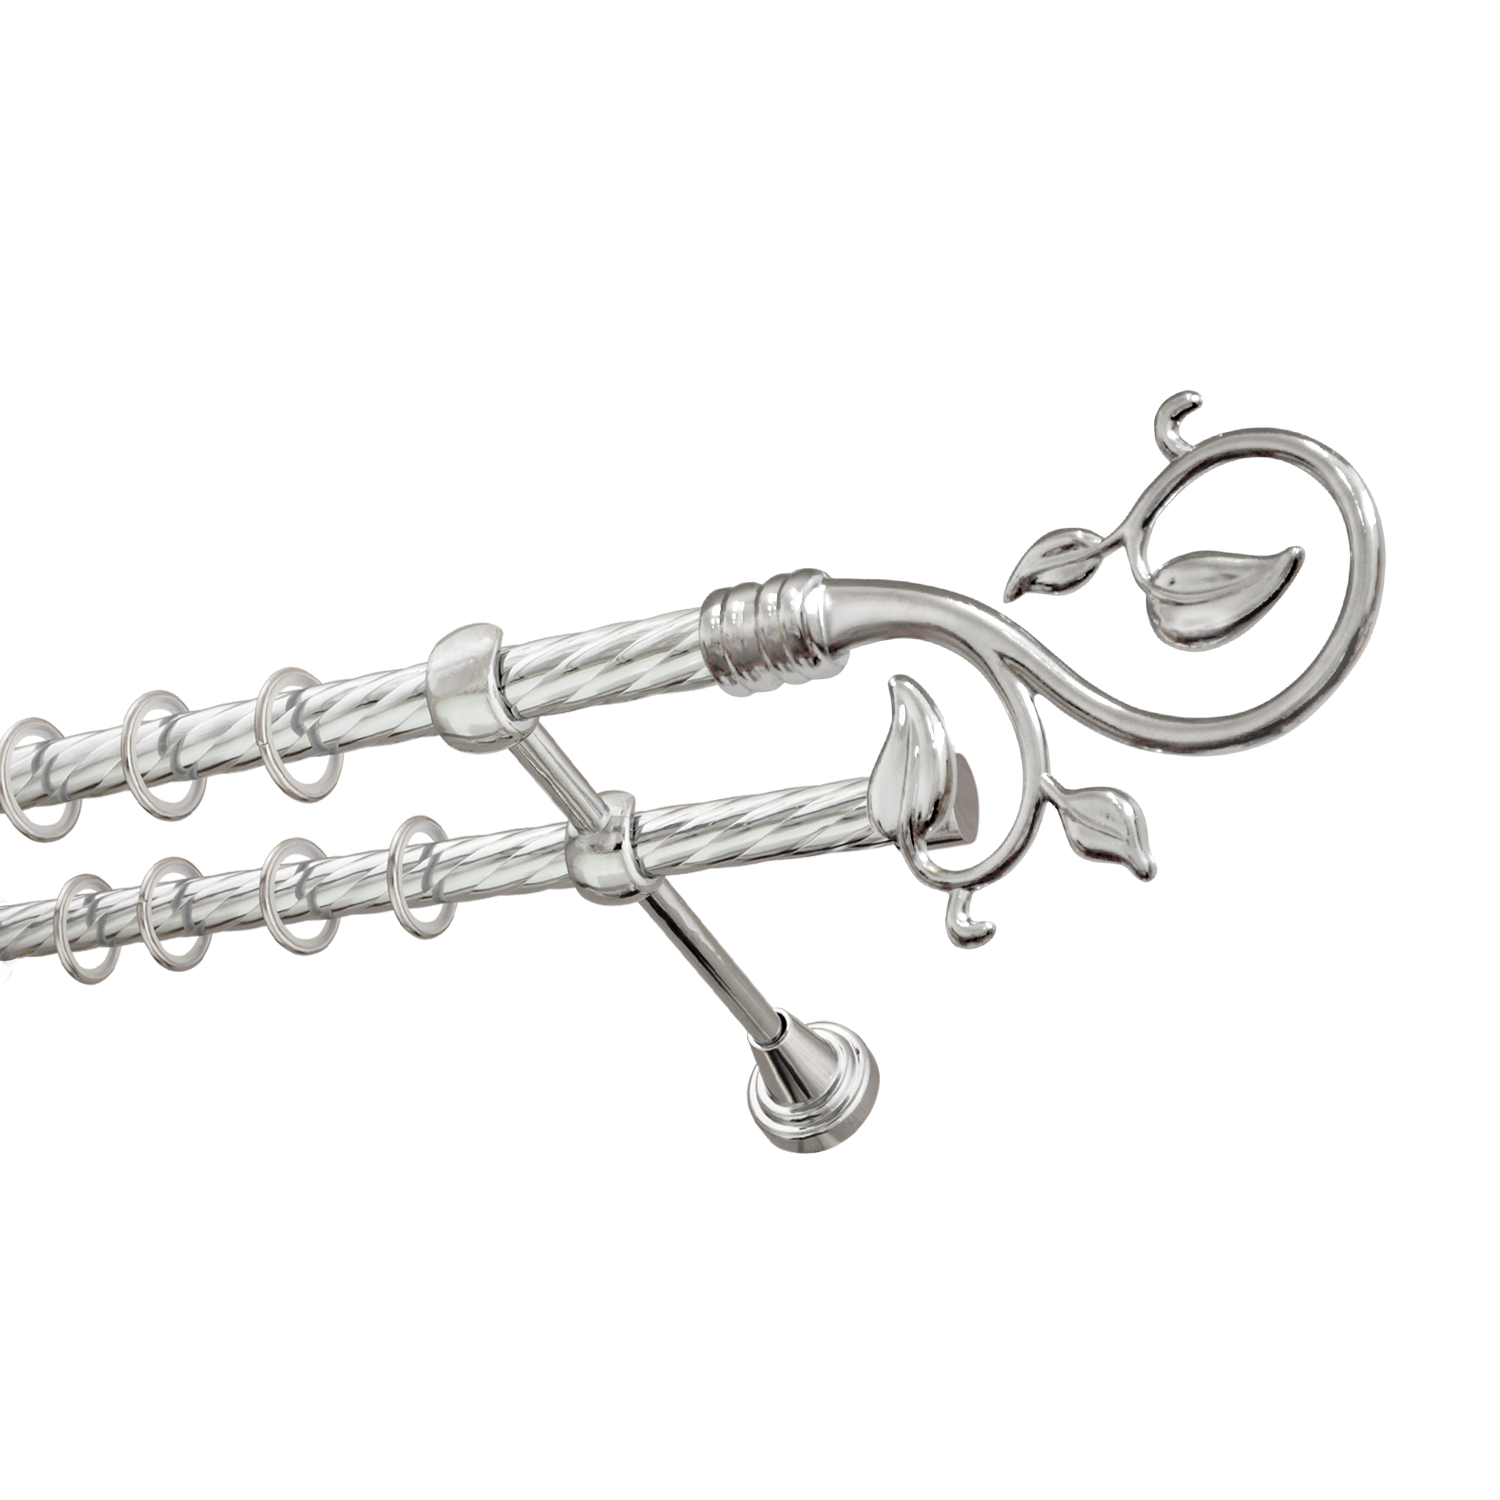 Металлический карниз для штор Амели, двухрядный 16/16 мм, серебро, витая штанга, длина 240 см